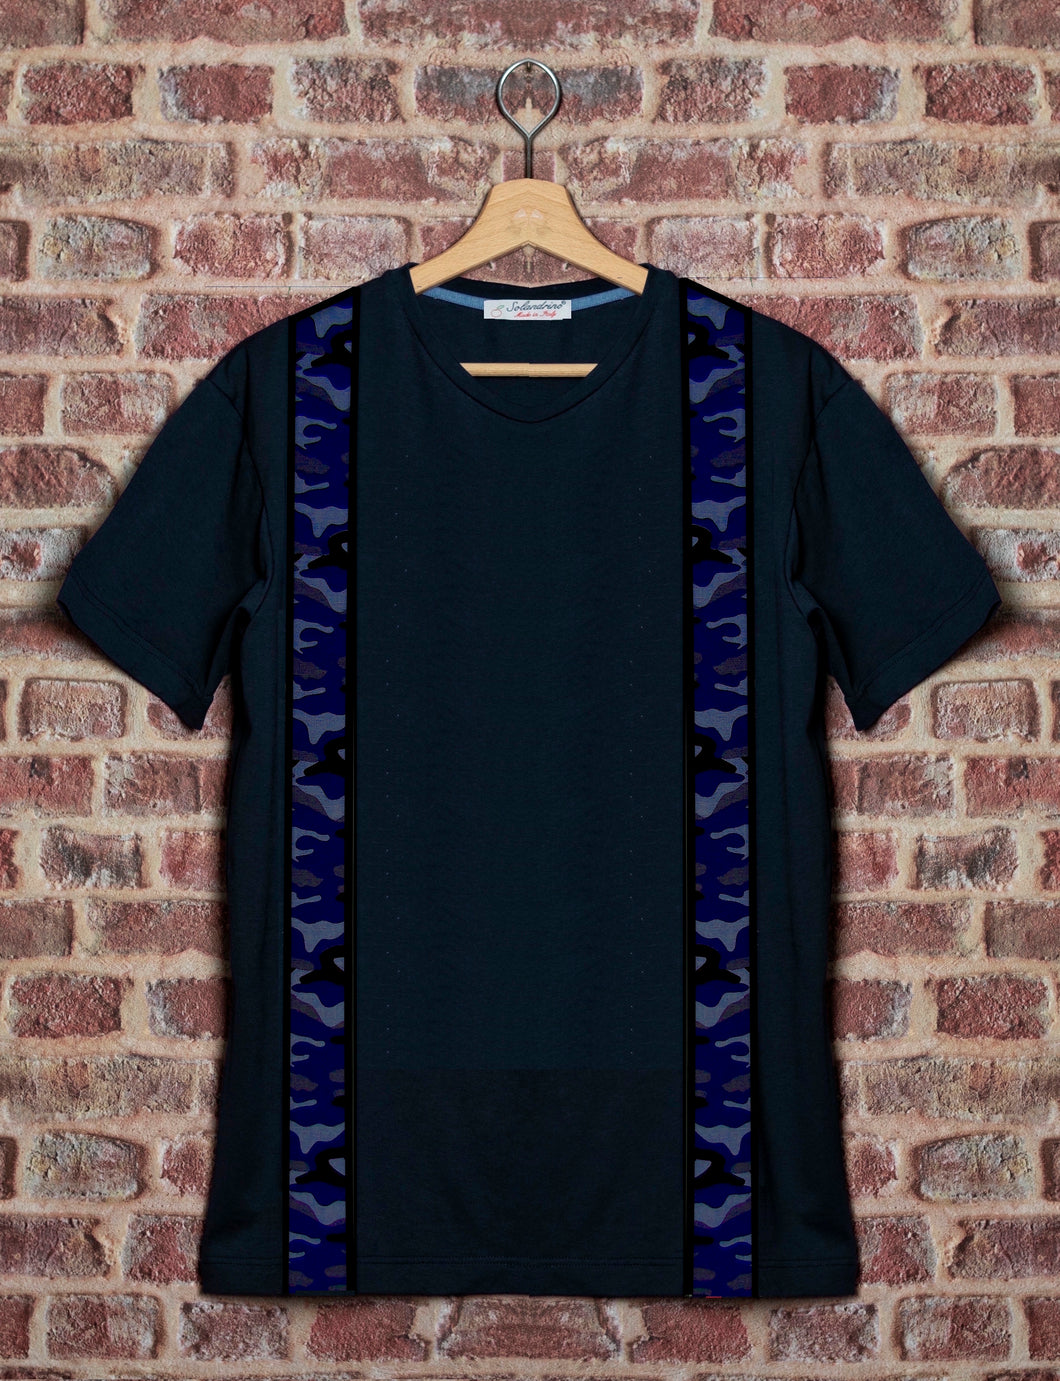 T-shirt blu made in italy 100% cotone jersey pettinato - MODELLO BRETELLA STRAP CAMOUFLAGE BLU -